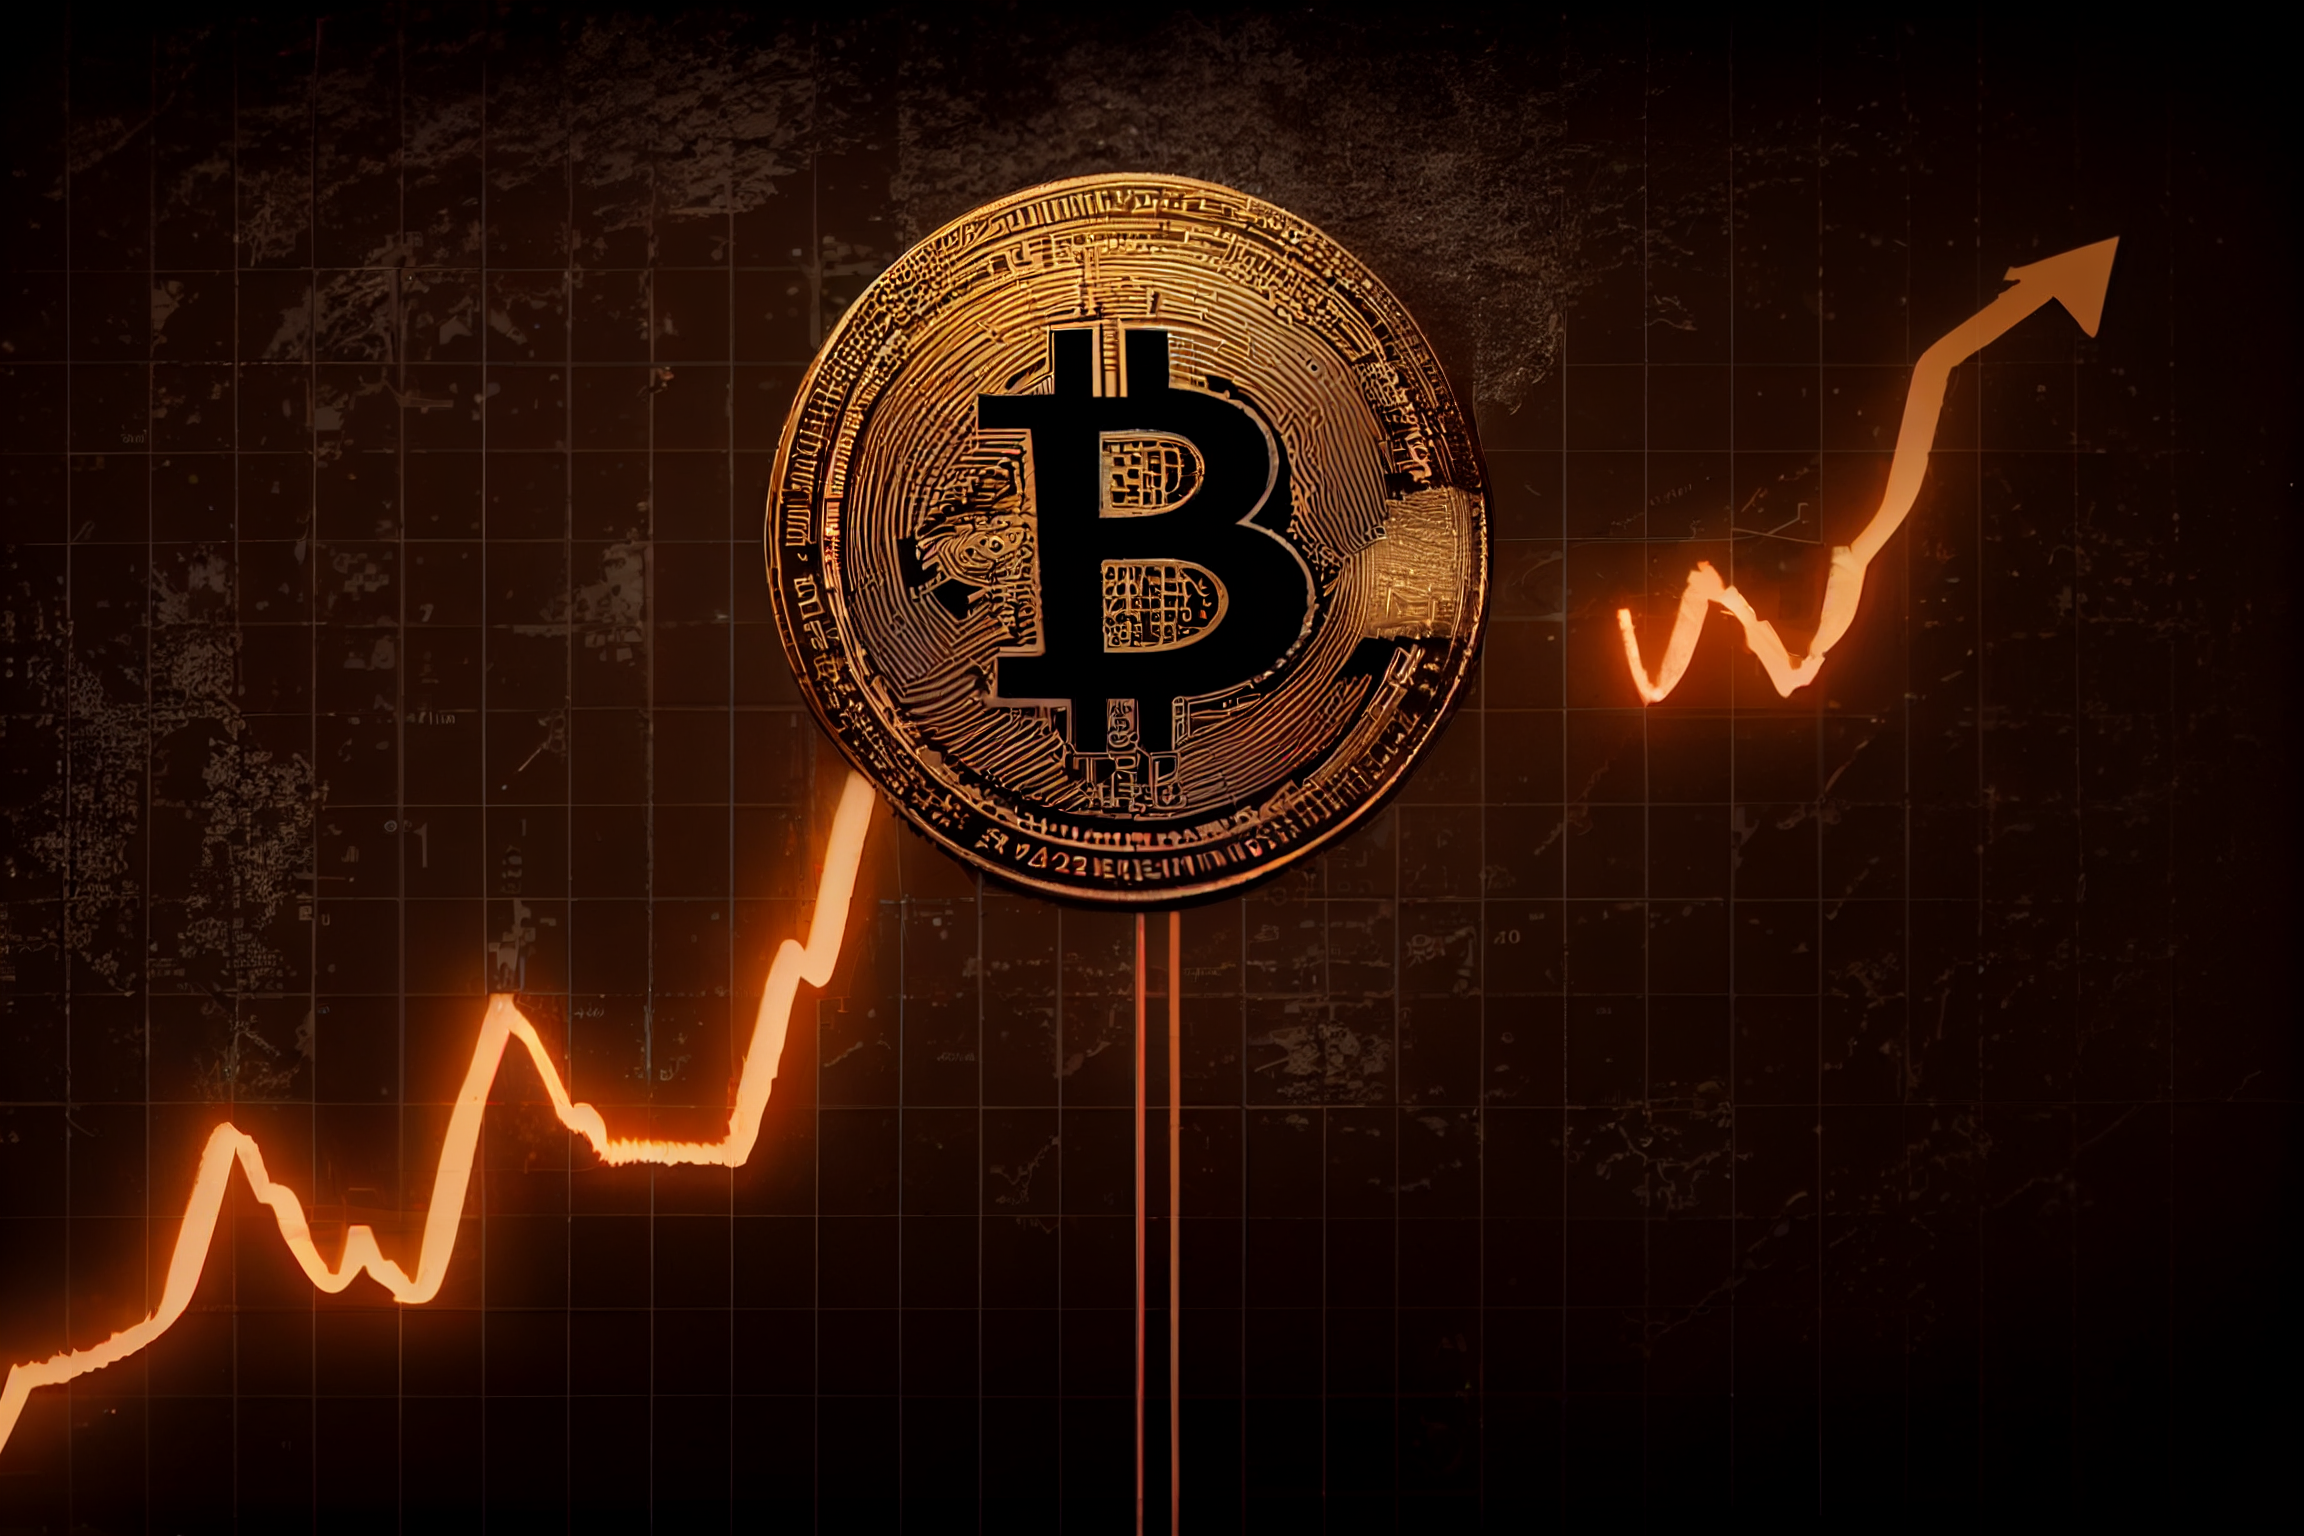 Bitcoin wzrósł o 20% w ciągu doby po upadku 3 banków w USA